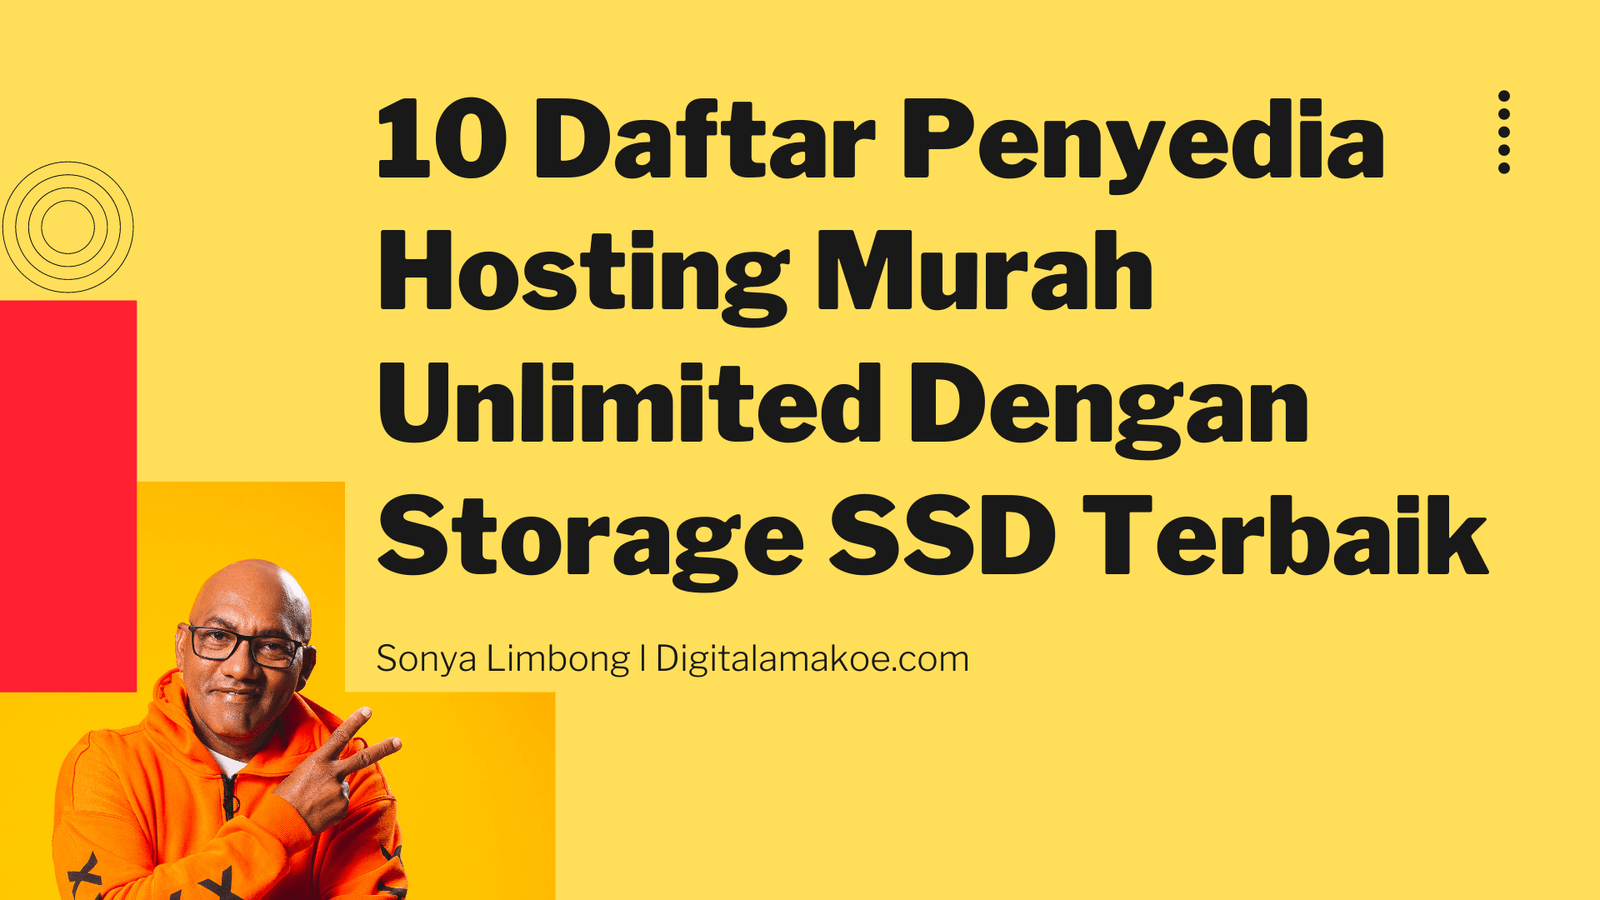 10 Daftar Penyedia Hosting Murah Unlimited Dengan Storage SSD Terbaik